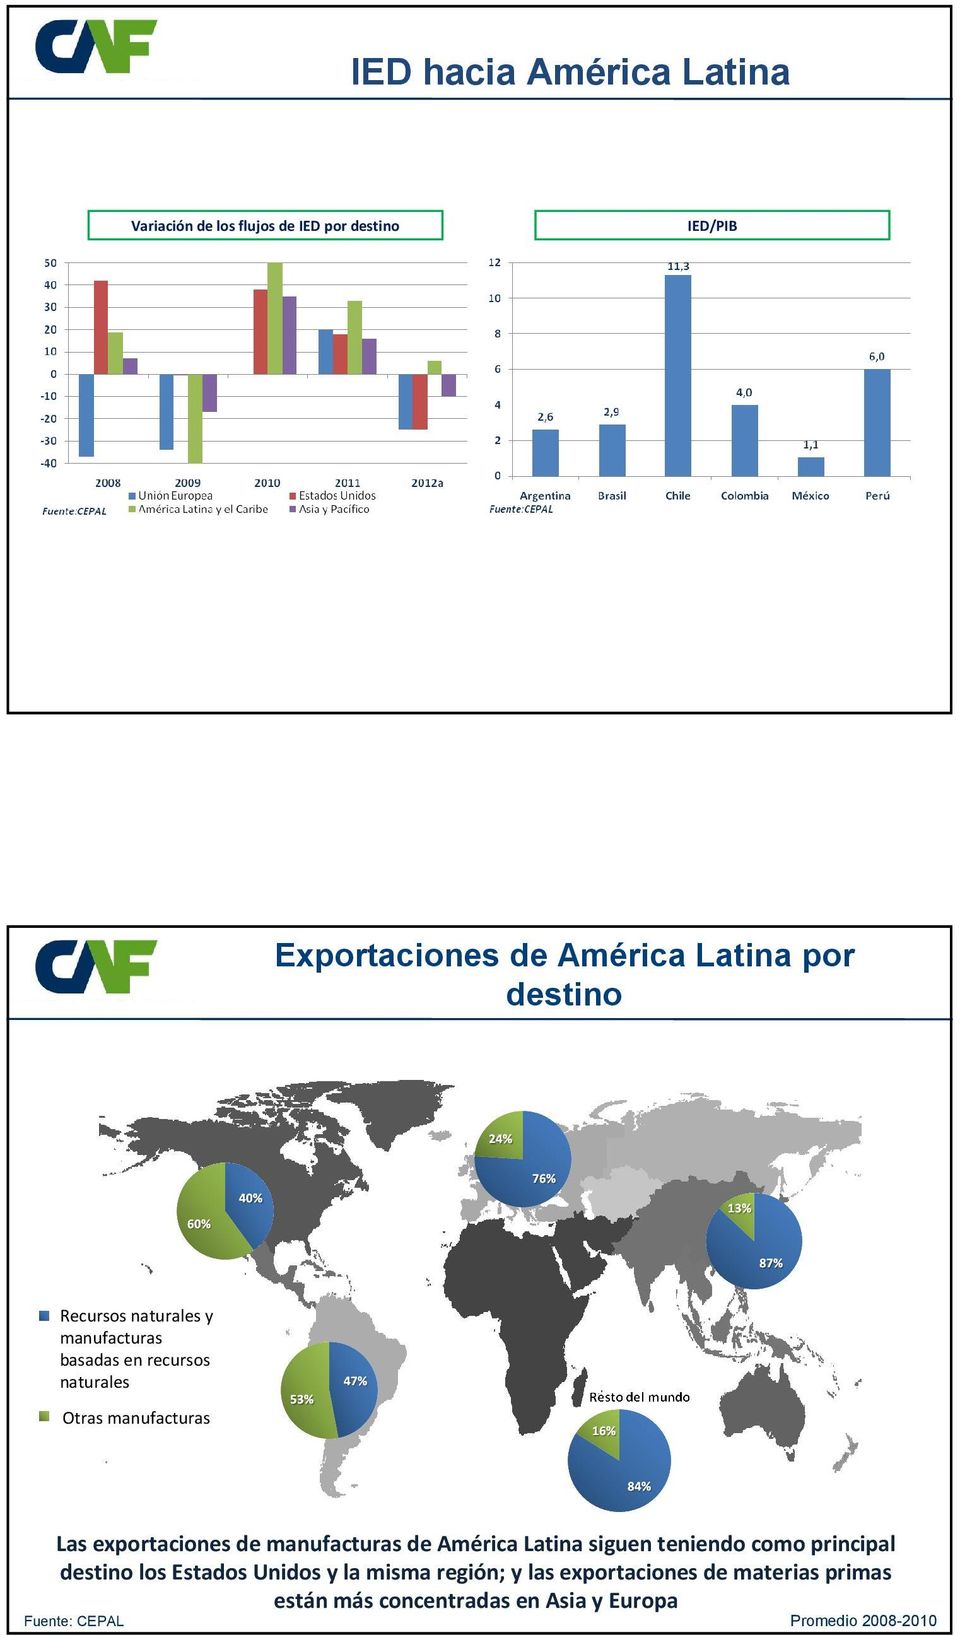 exportaciones de manufacturas de América Latina siguen teniendo como principal destino los Estados Unidos y la